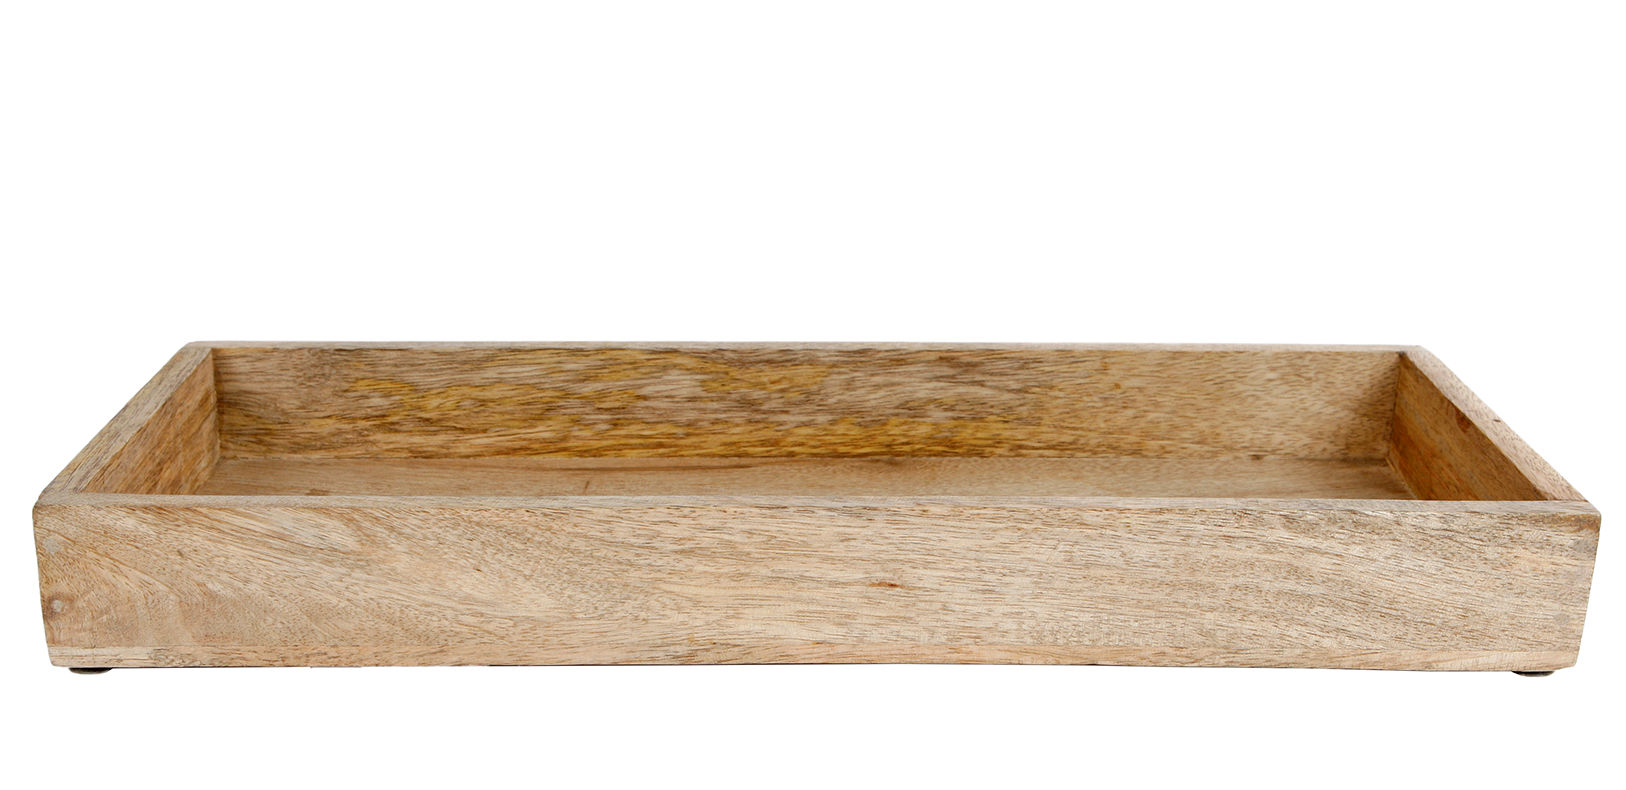 Mango Holz Kerzen Tablett eckig - 39 x 14 cm - Deko Holztablett mit Rand